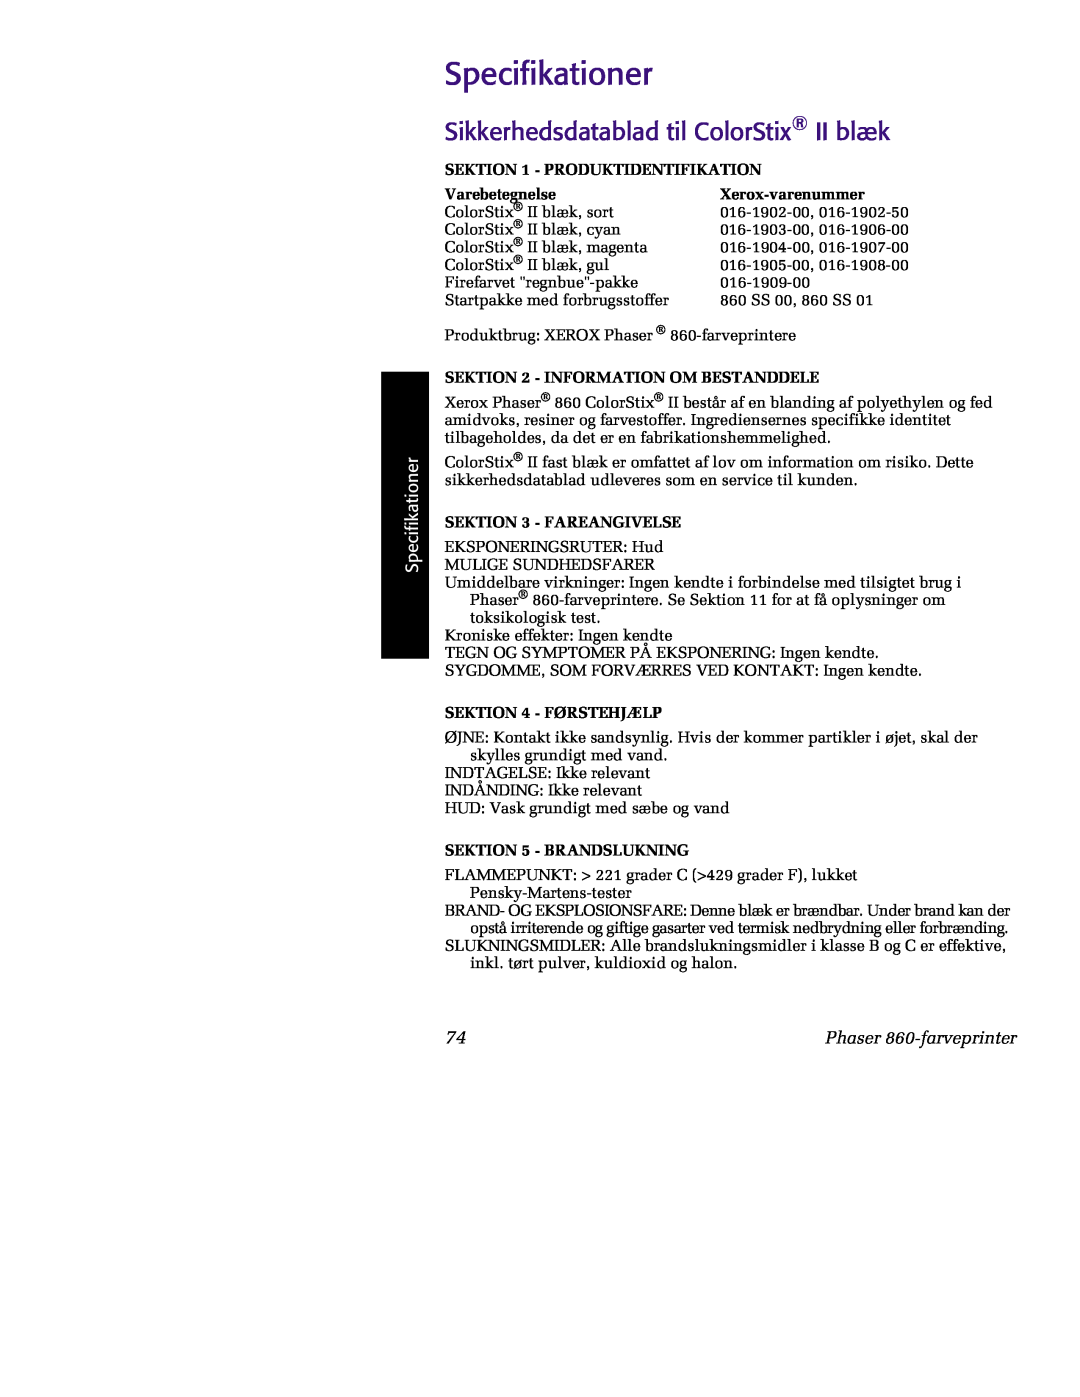 Tektronix manual Specifikationer, Sikkerhedsdatablad til ColorStix II blæk, Phaser 860-farveprinter, Varebetegnelse 